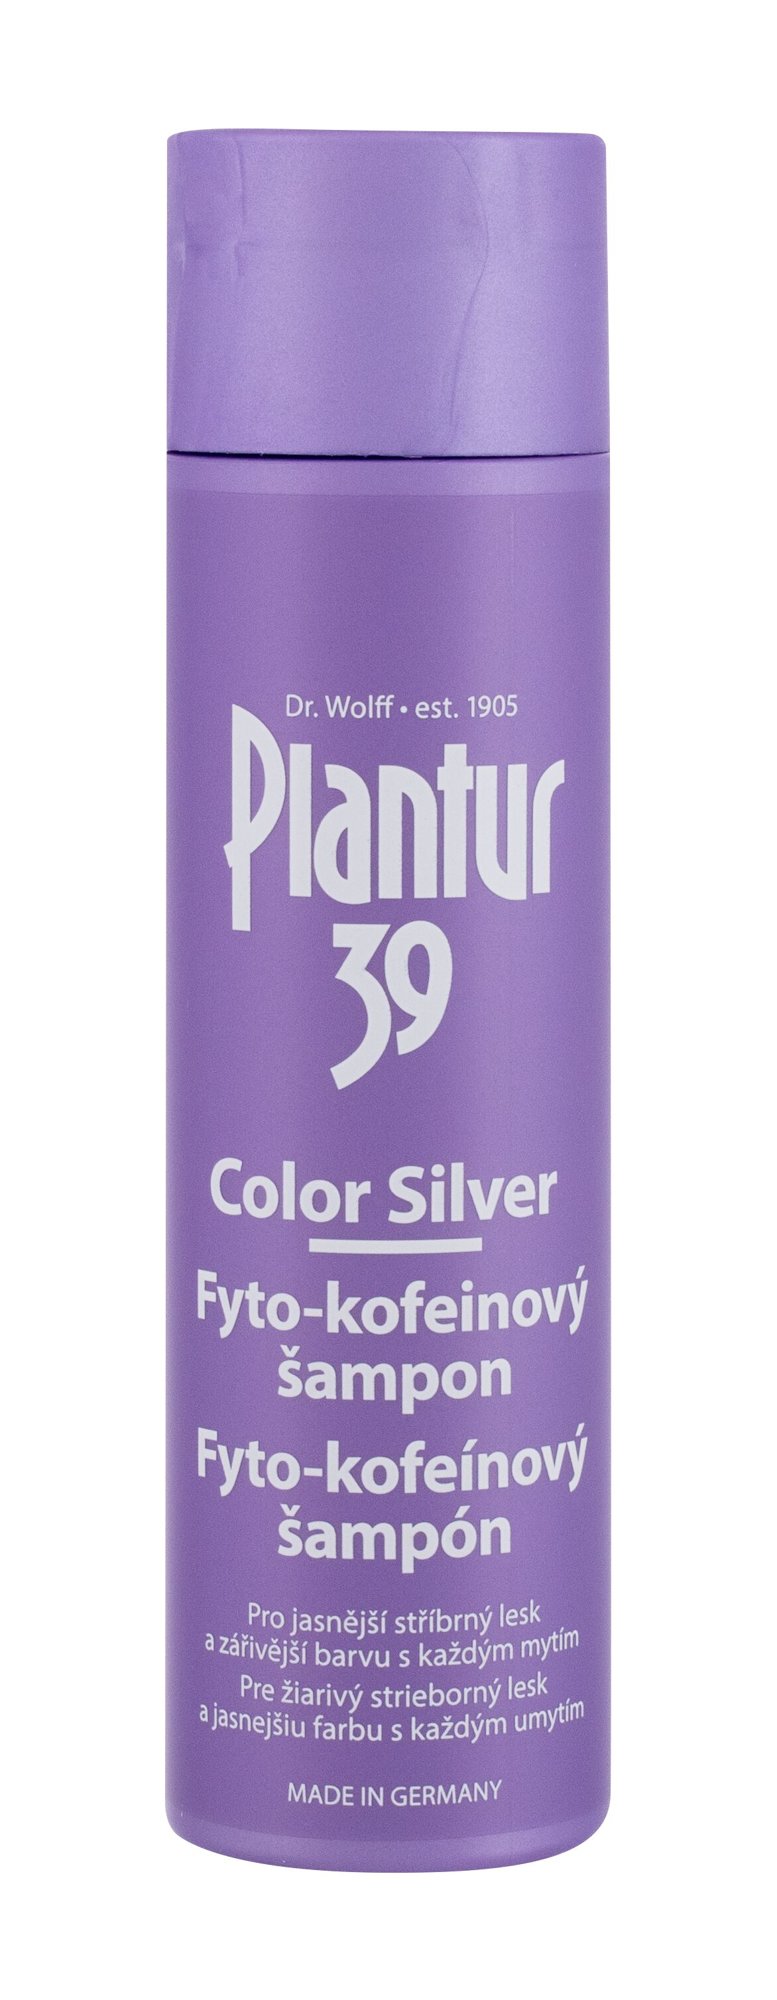 Plantur 39 Phyto-Coffein Color Silver 250ml šampūnas